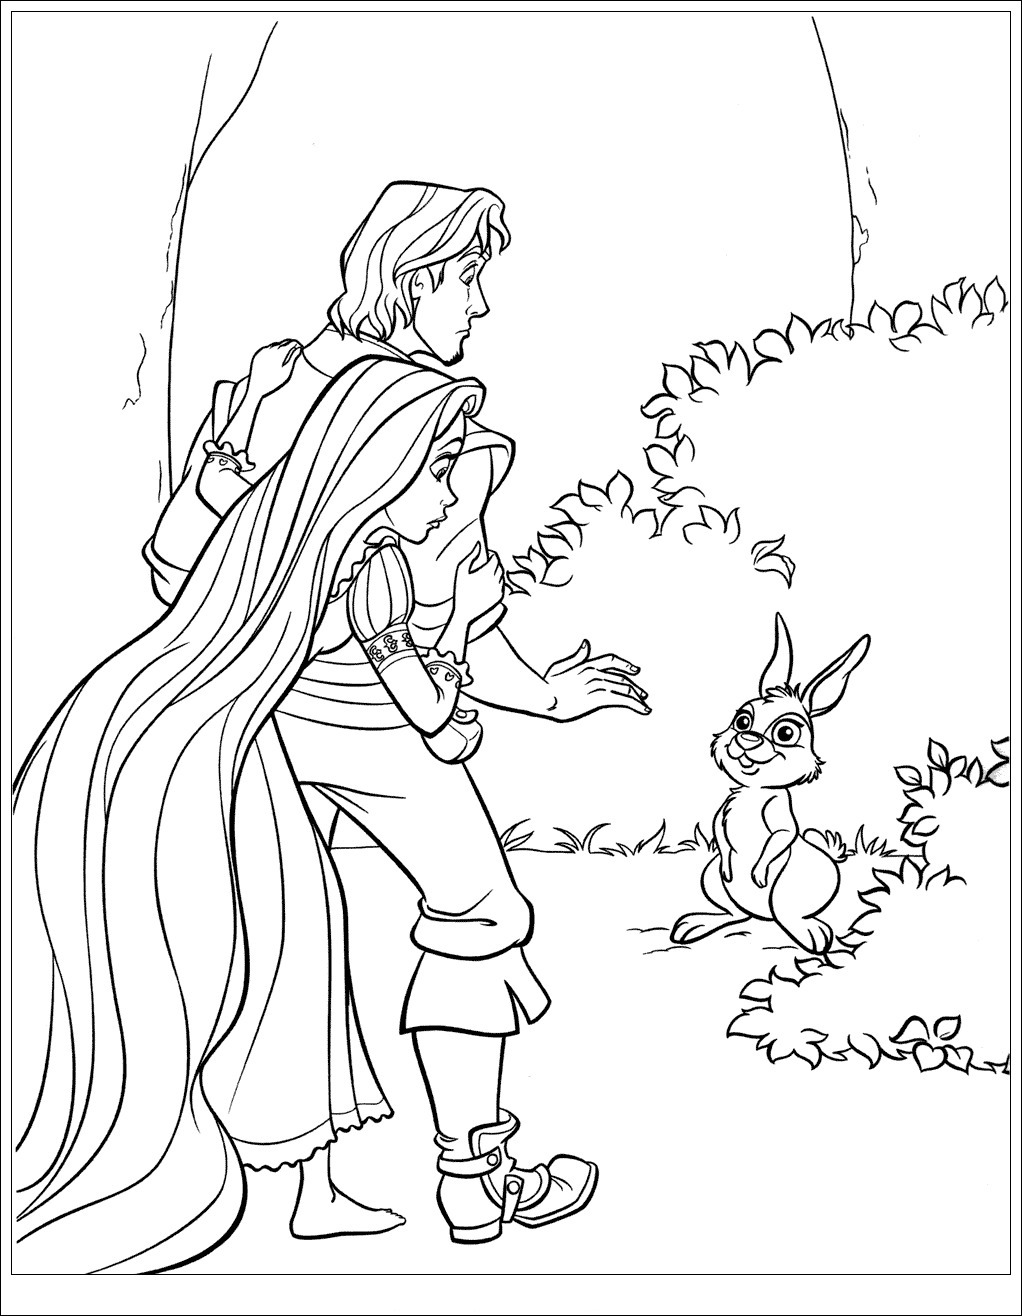 Flynn und Kaninchen aus Rapunzel